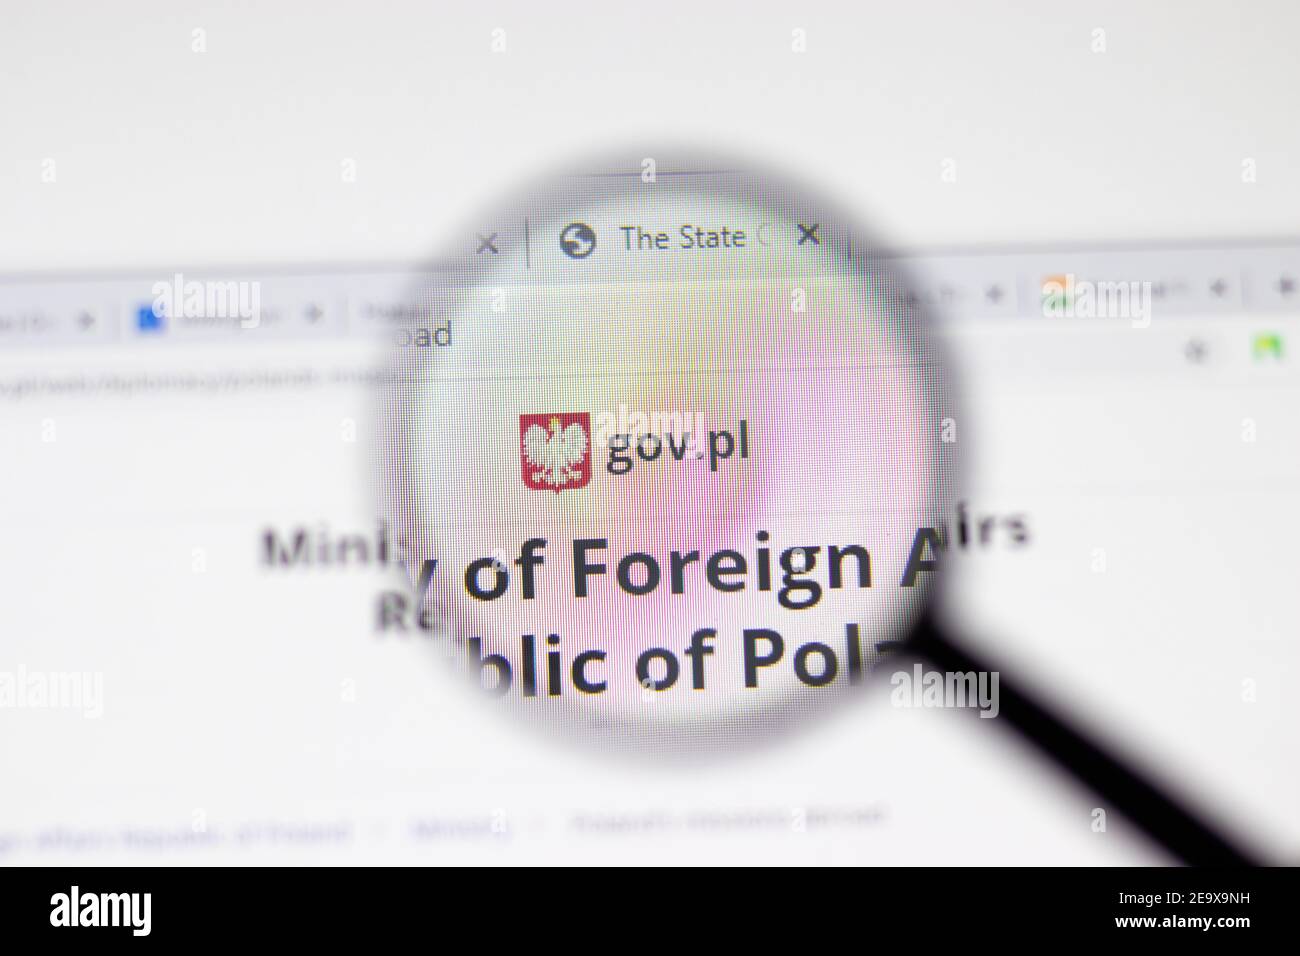 Los Angeles, EE.UU. - 1 de febrero de 2021: Página web del gobierno de Polonia. Gov.pl logo en pantalla, editorial ilustrativa Foto de stock